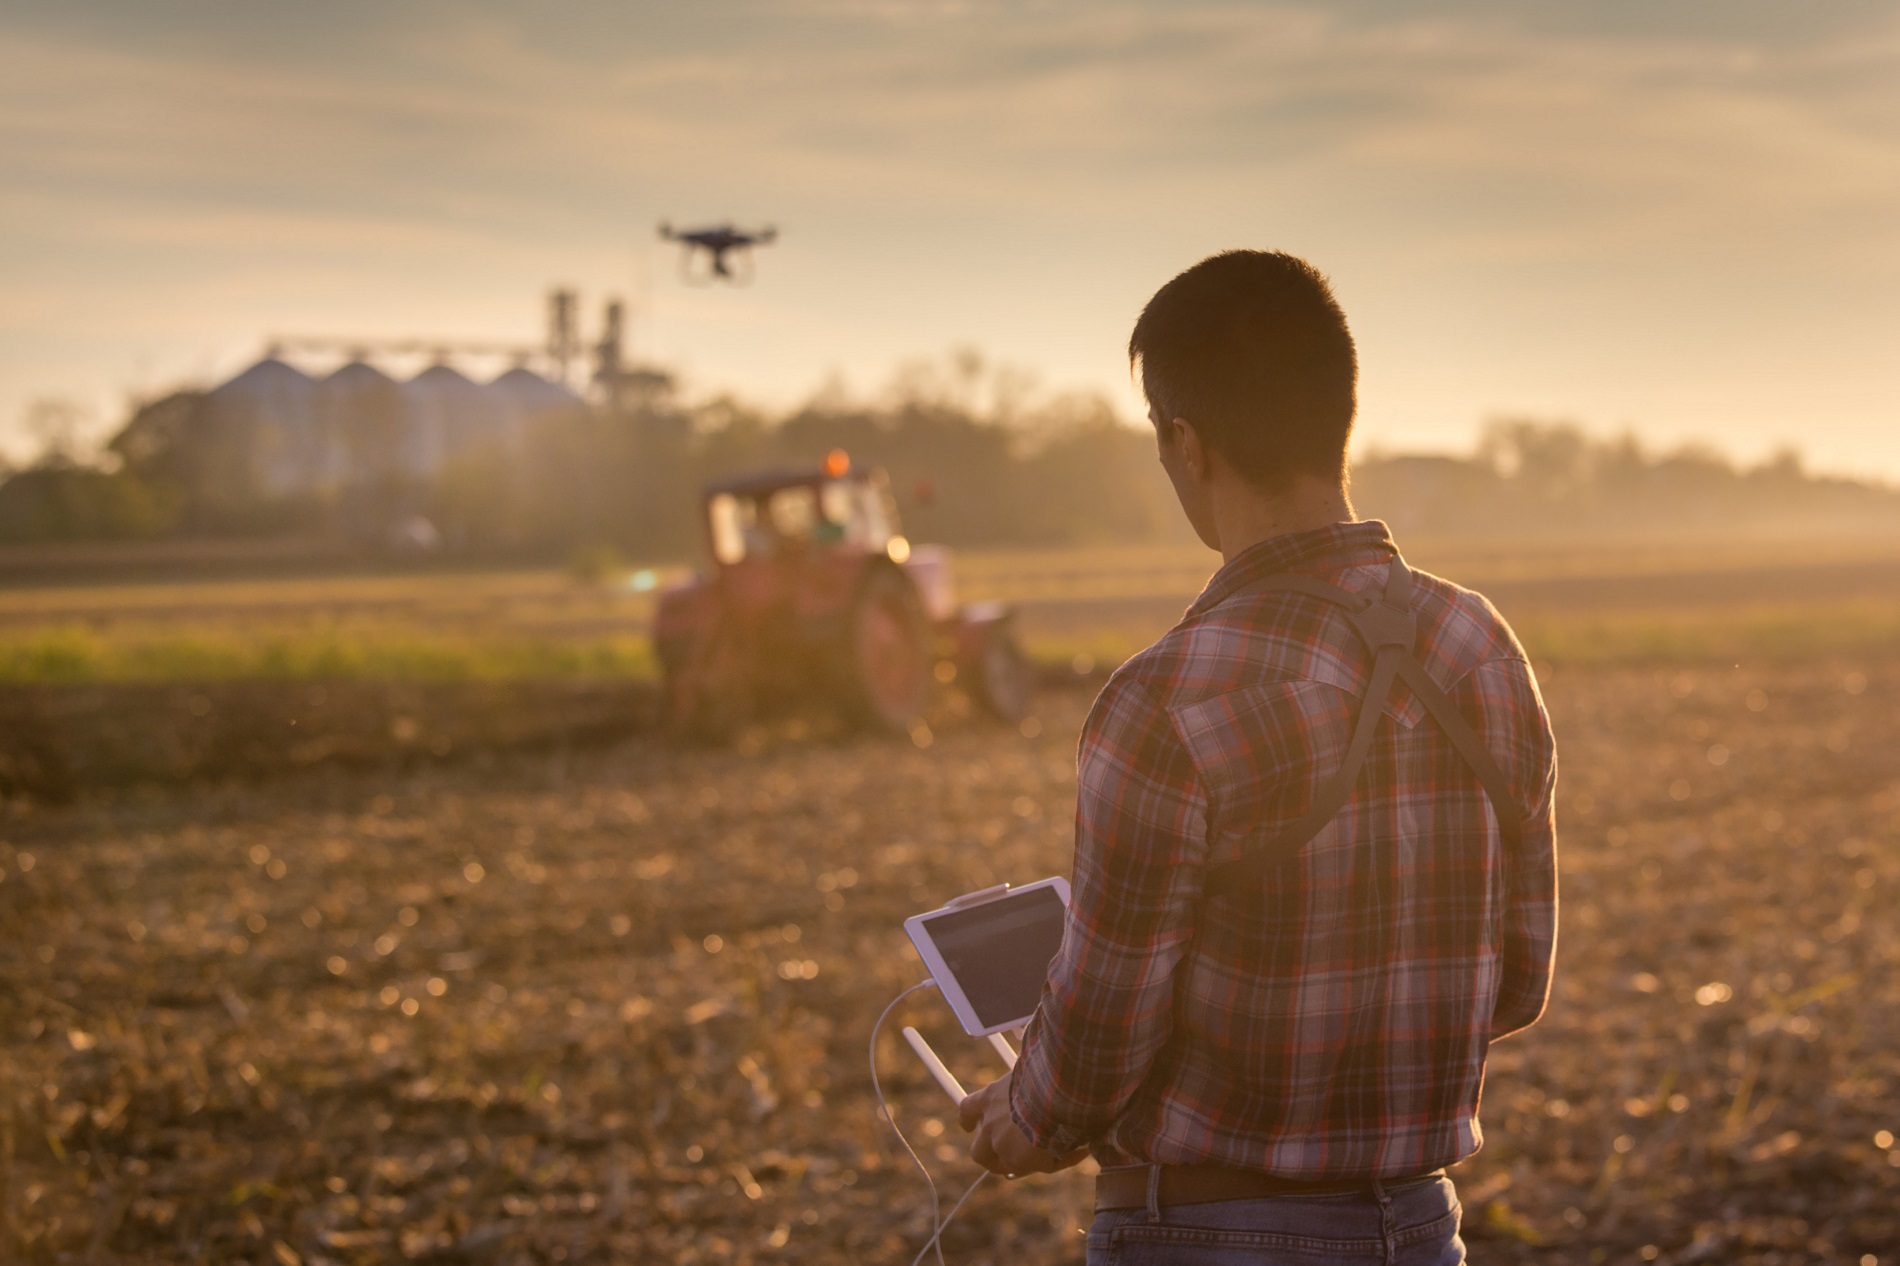 Resuelve con nosotros tus dudas sobre la aplicabilidad actual de drones en la agricultura